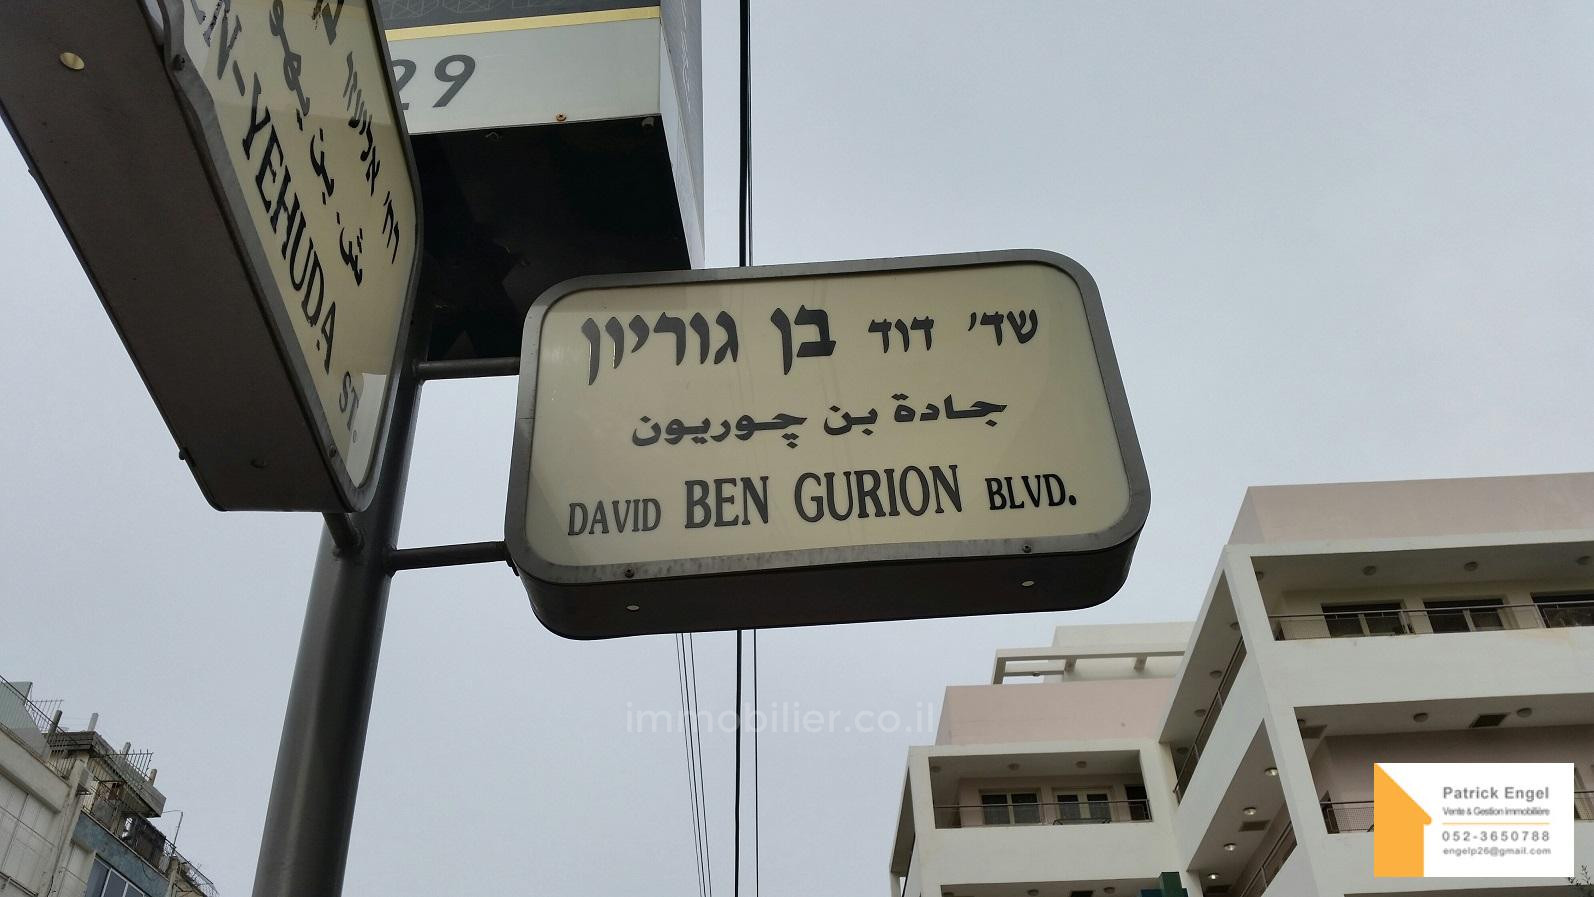 Appartamento 3 vani Tel Aviv quartiere di mare 232-IBL-3623